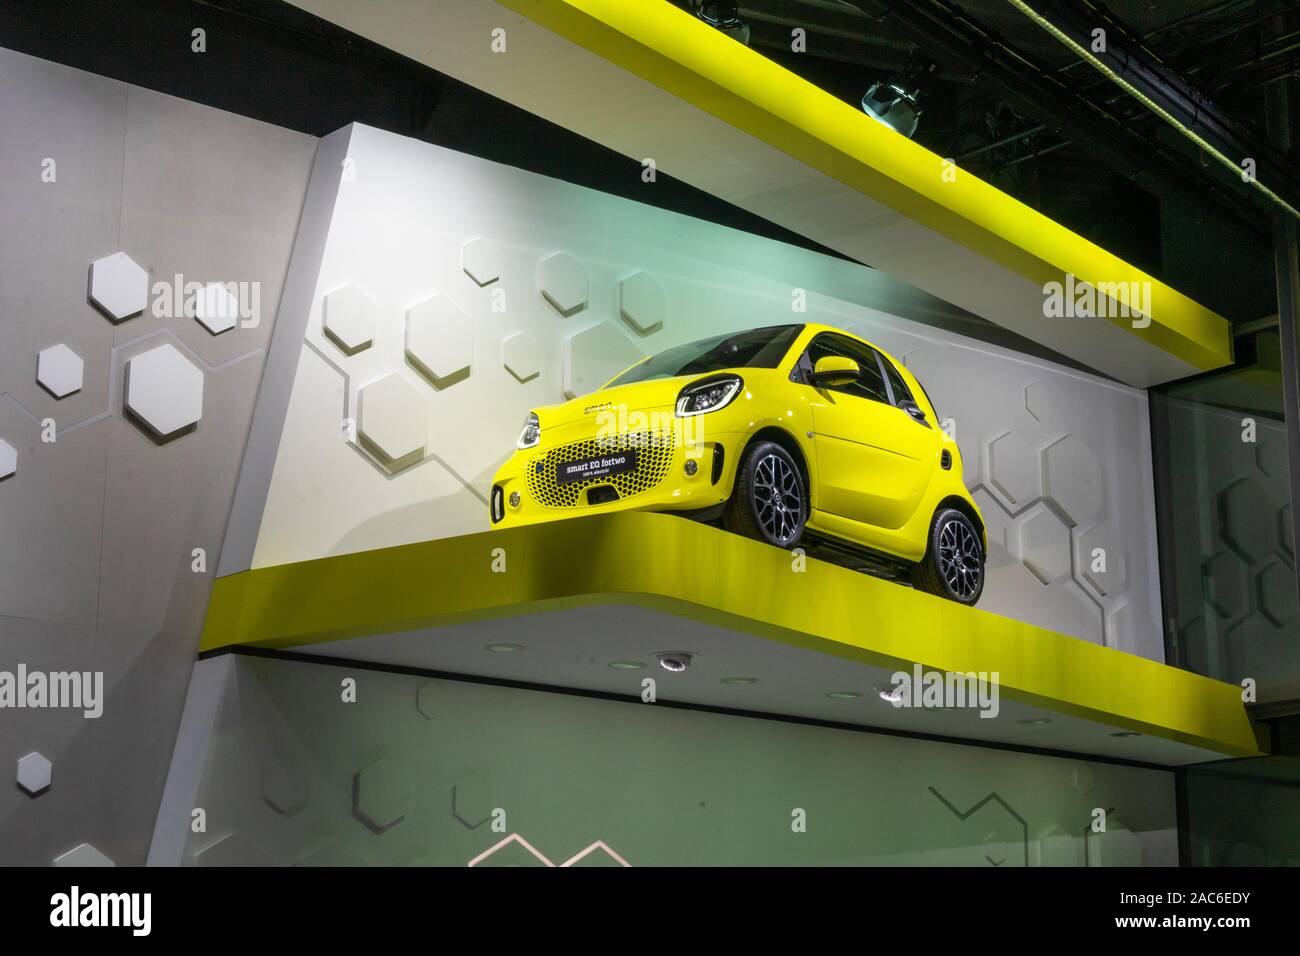 Francfort, Allemagne - 20 SEPT 2019 : smart fortwo jaune EQ petite voiture électrique de MERCEDES-BENZ, IAA International Motor Show Salon International de l'auto. Banque D'Images